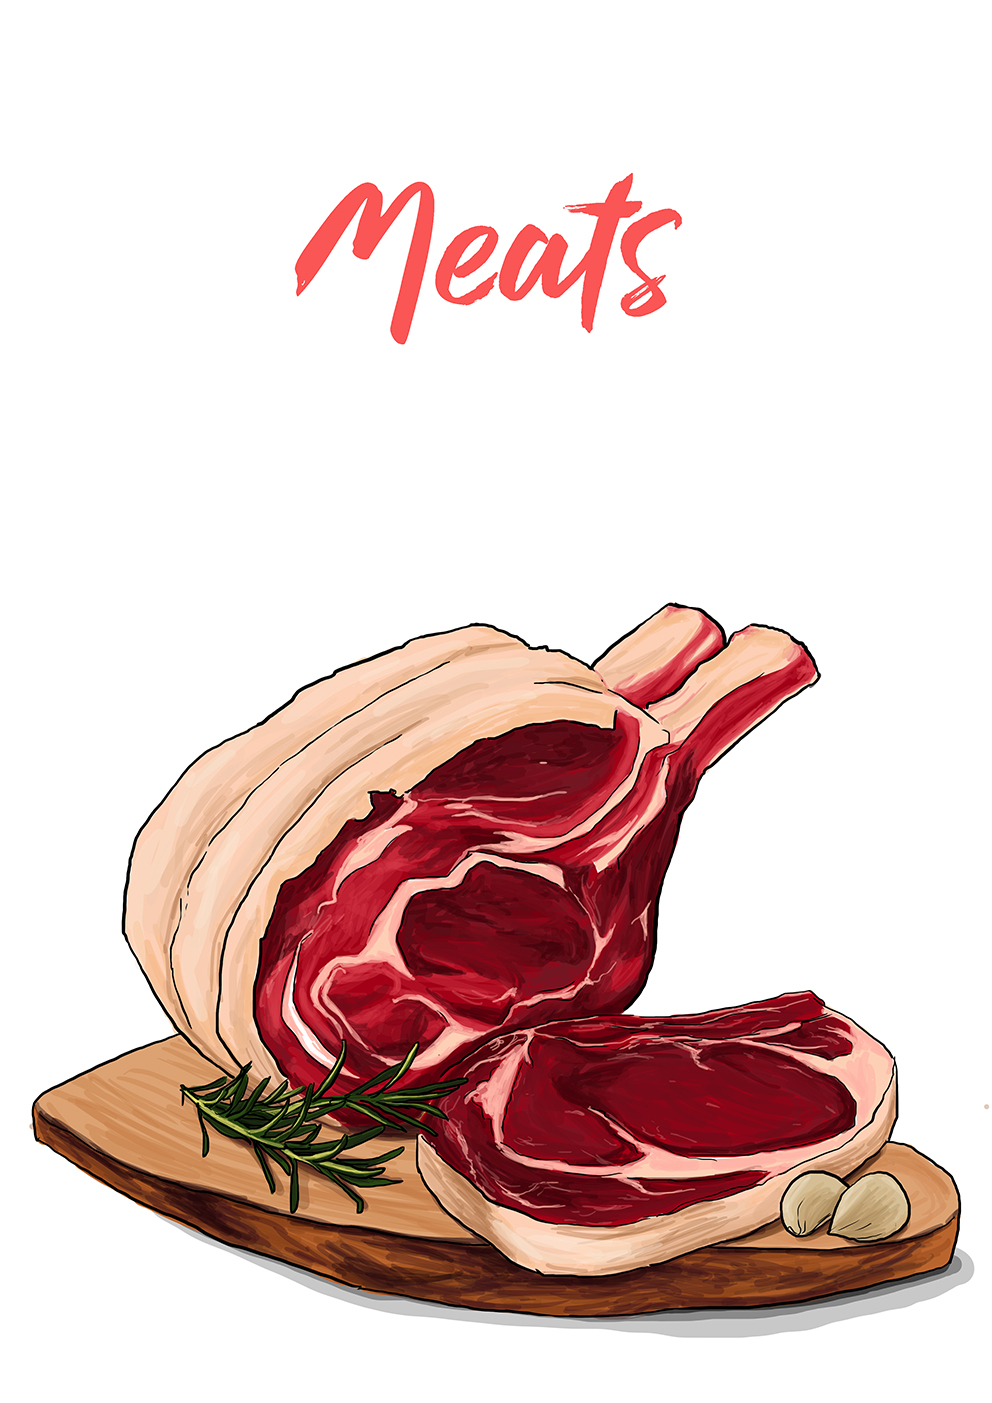 Meats_final_120